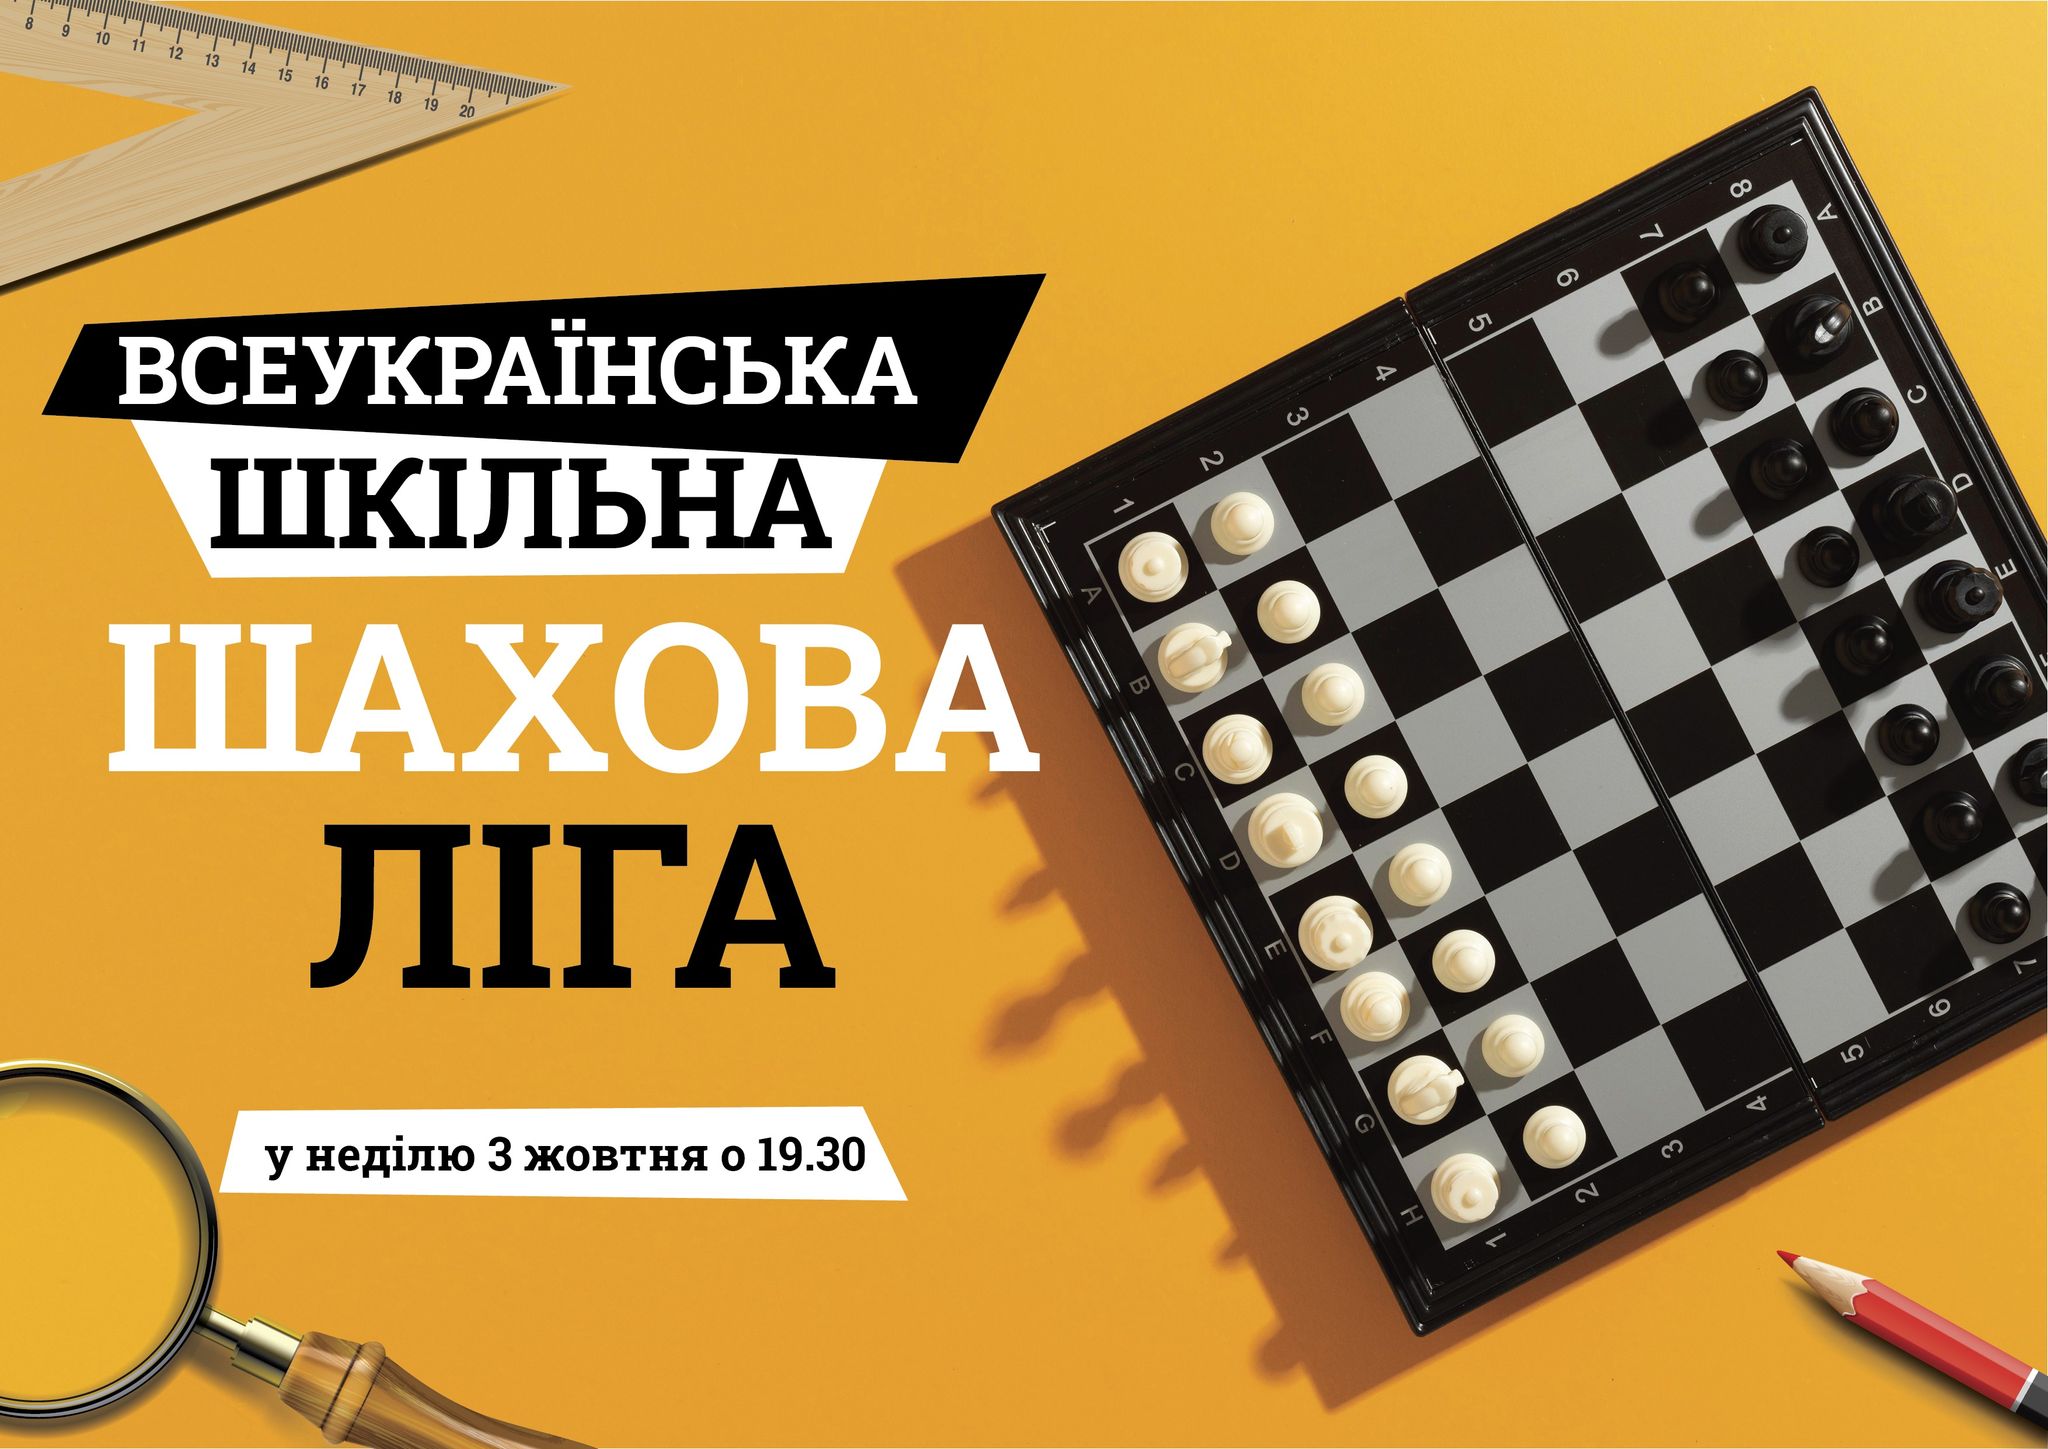 Четвергі змагання другого шахового року 2021/22 «Всеукраїнська шкільна шахова ліга» (сезон жовтень-грудень 2021 г.)